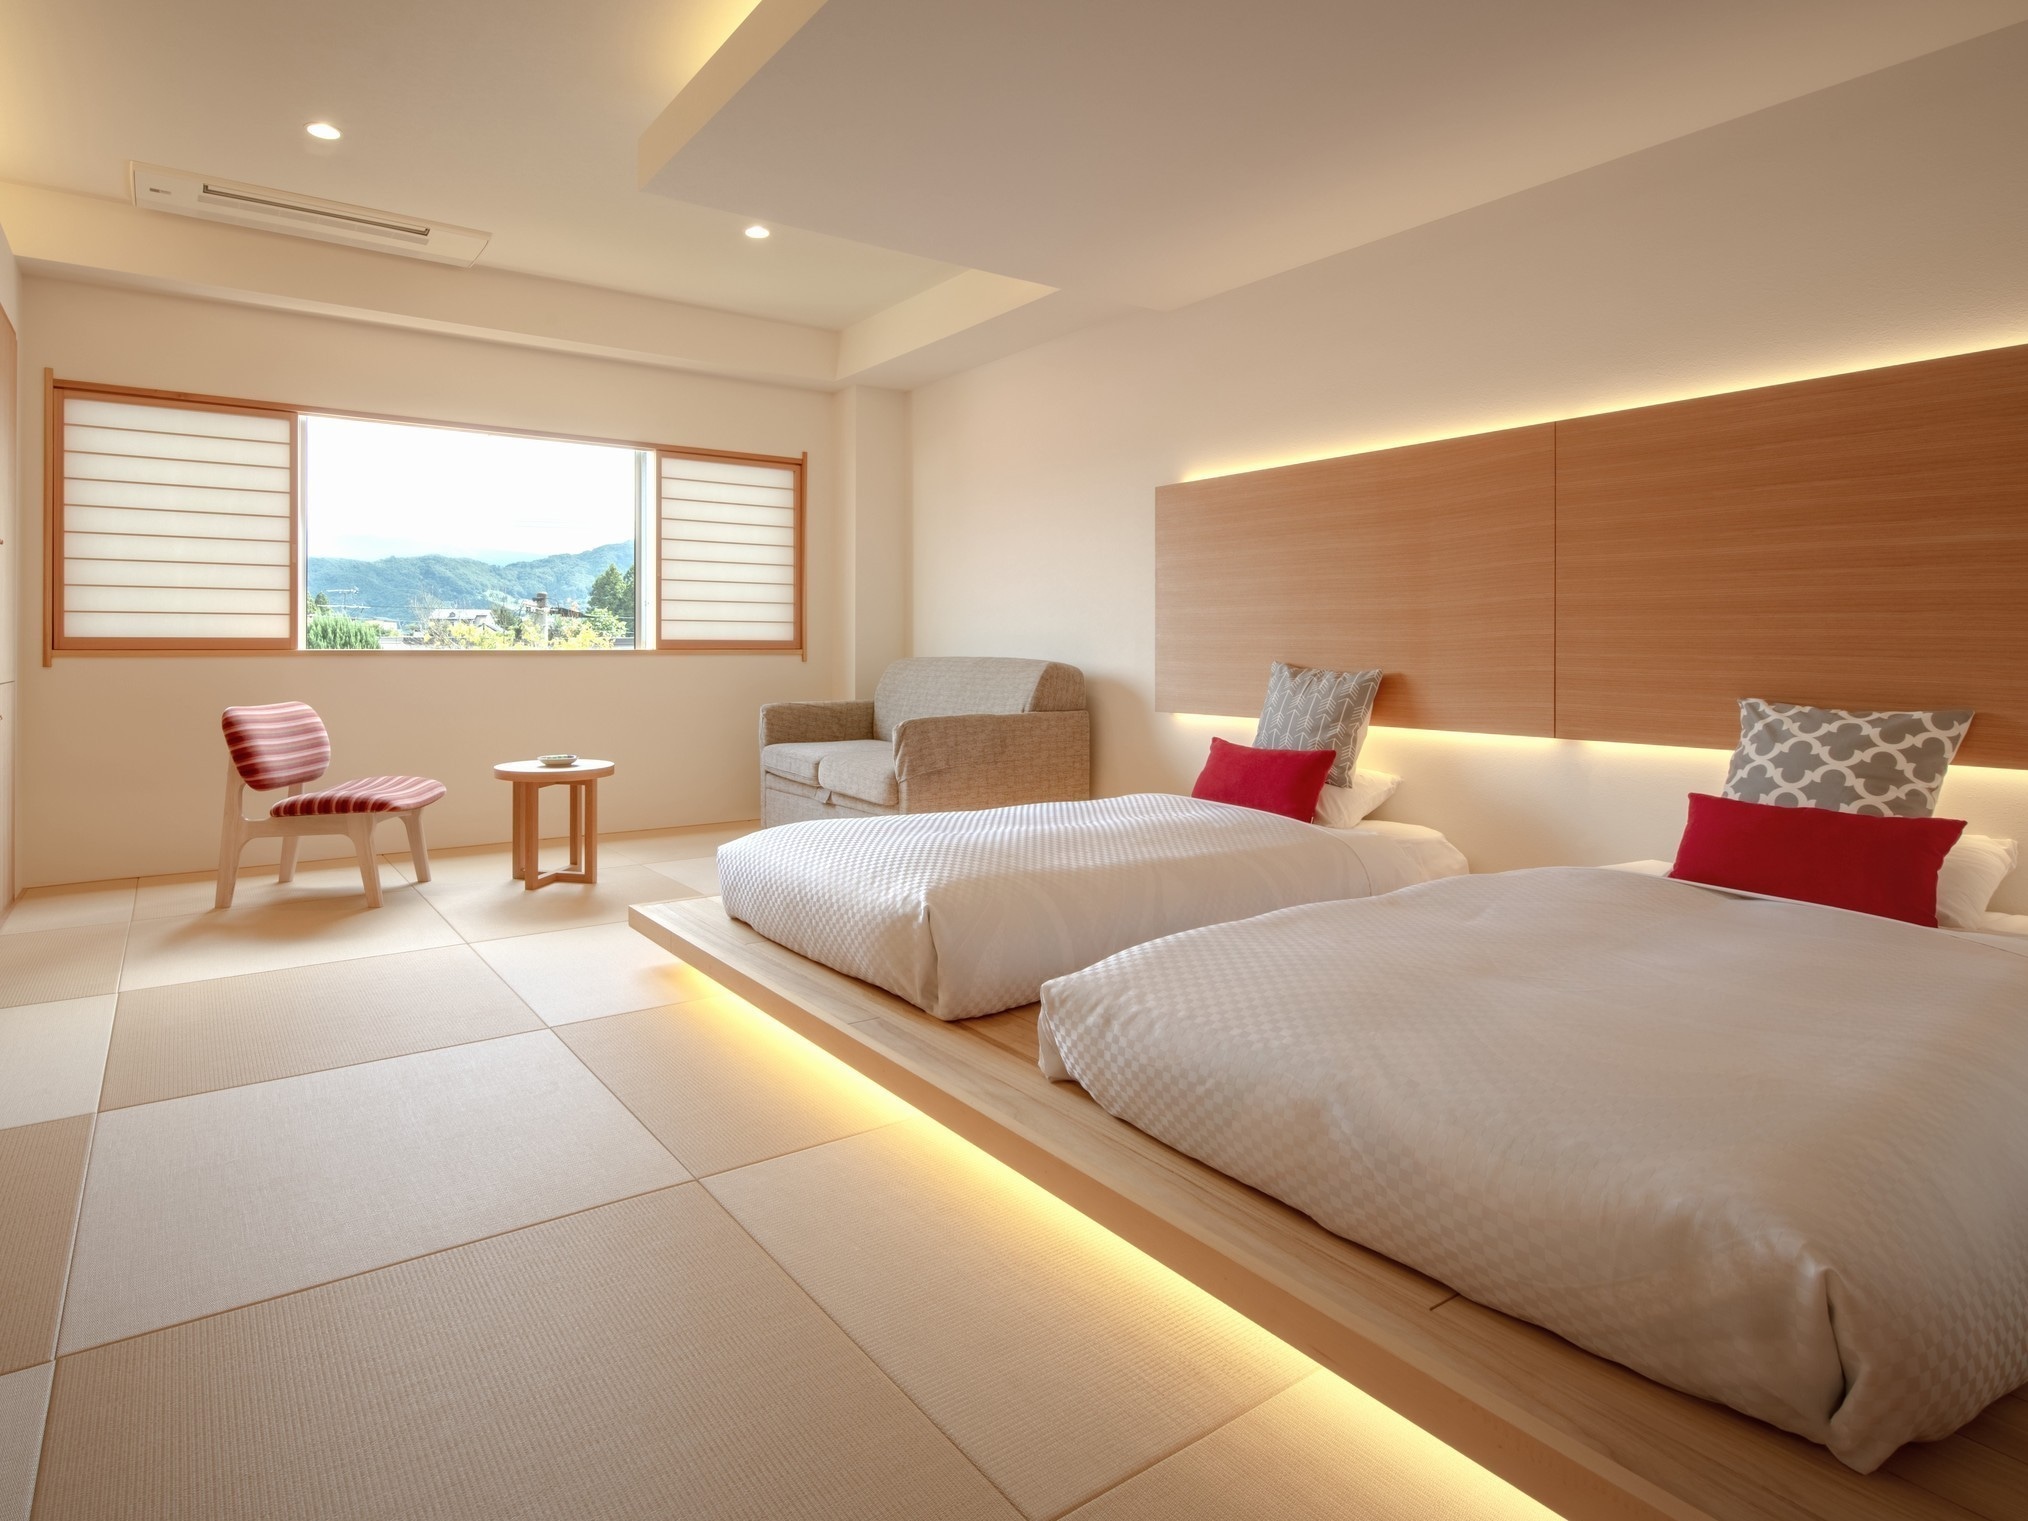 Kamar bergaya Jepang modern Jepang tempat tidur rendah (contoh)